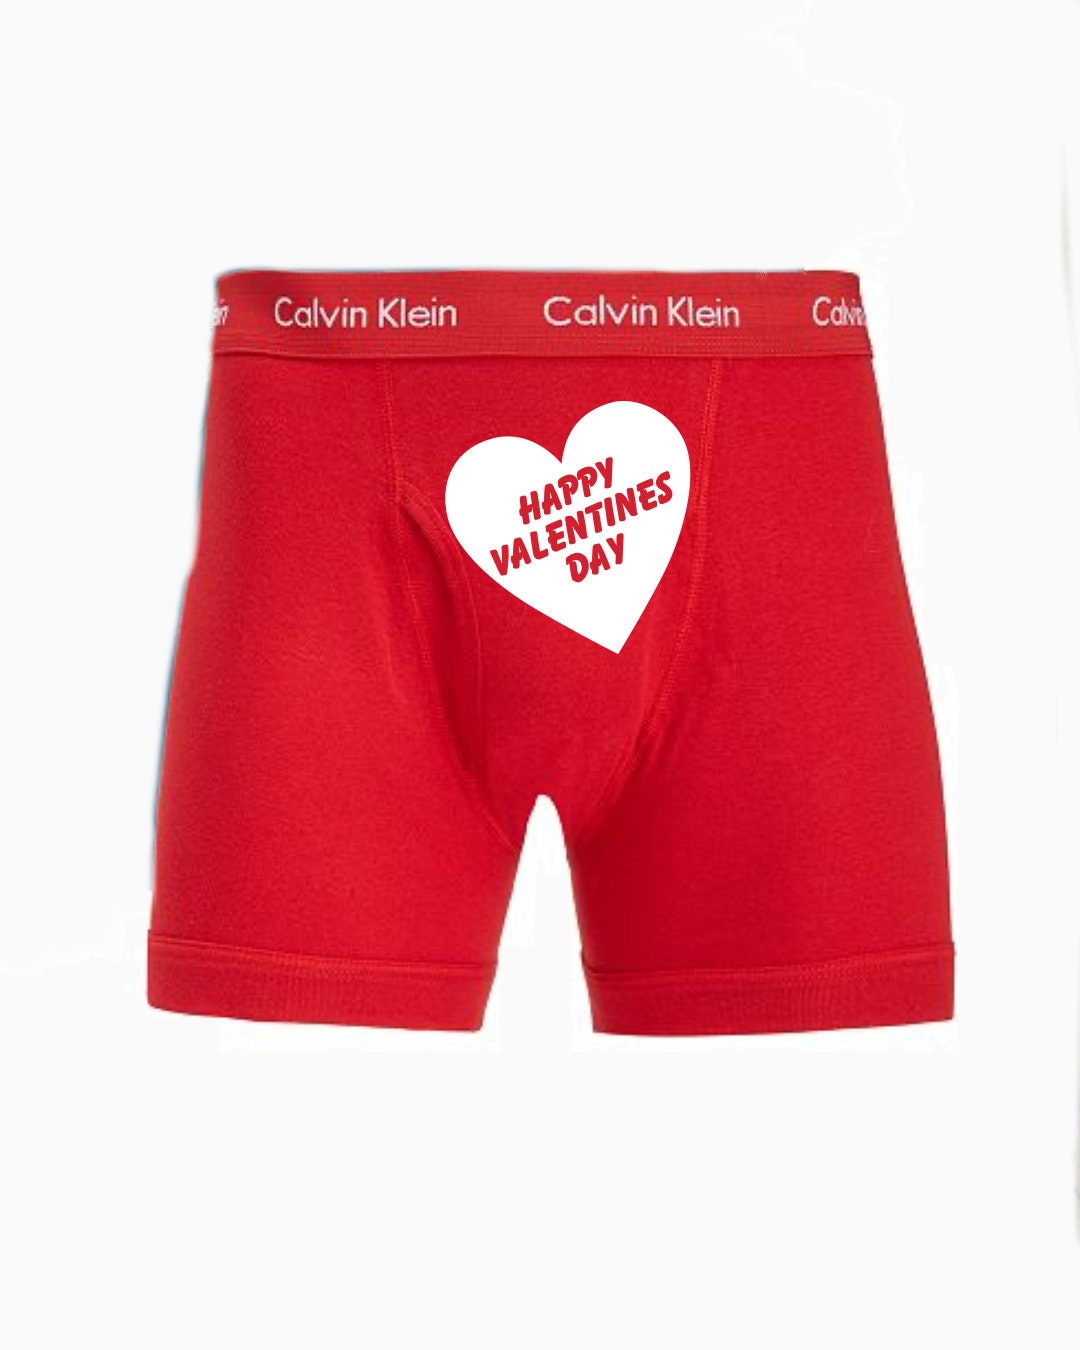 Happy Valentines Day Calvin Klein Mens Boxer Briefs FAST - Etsy